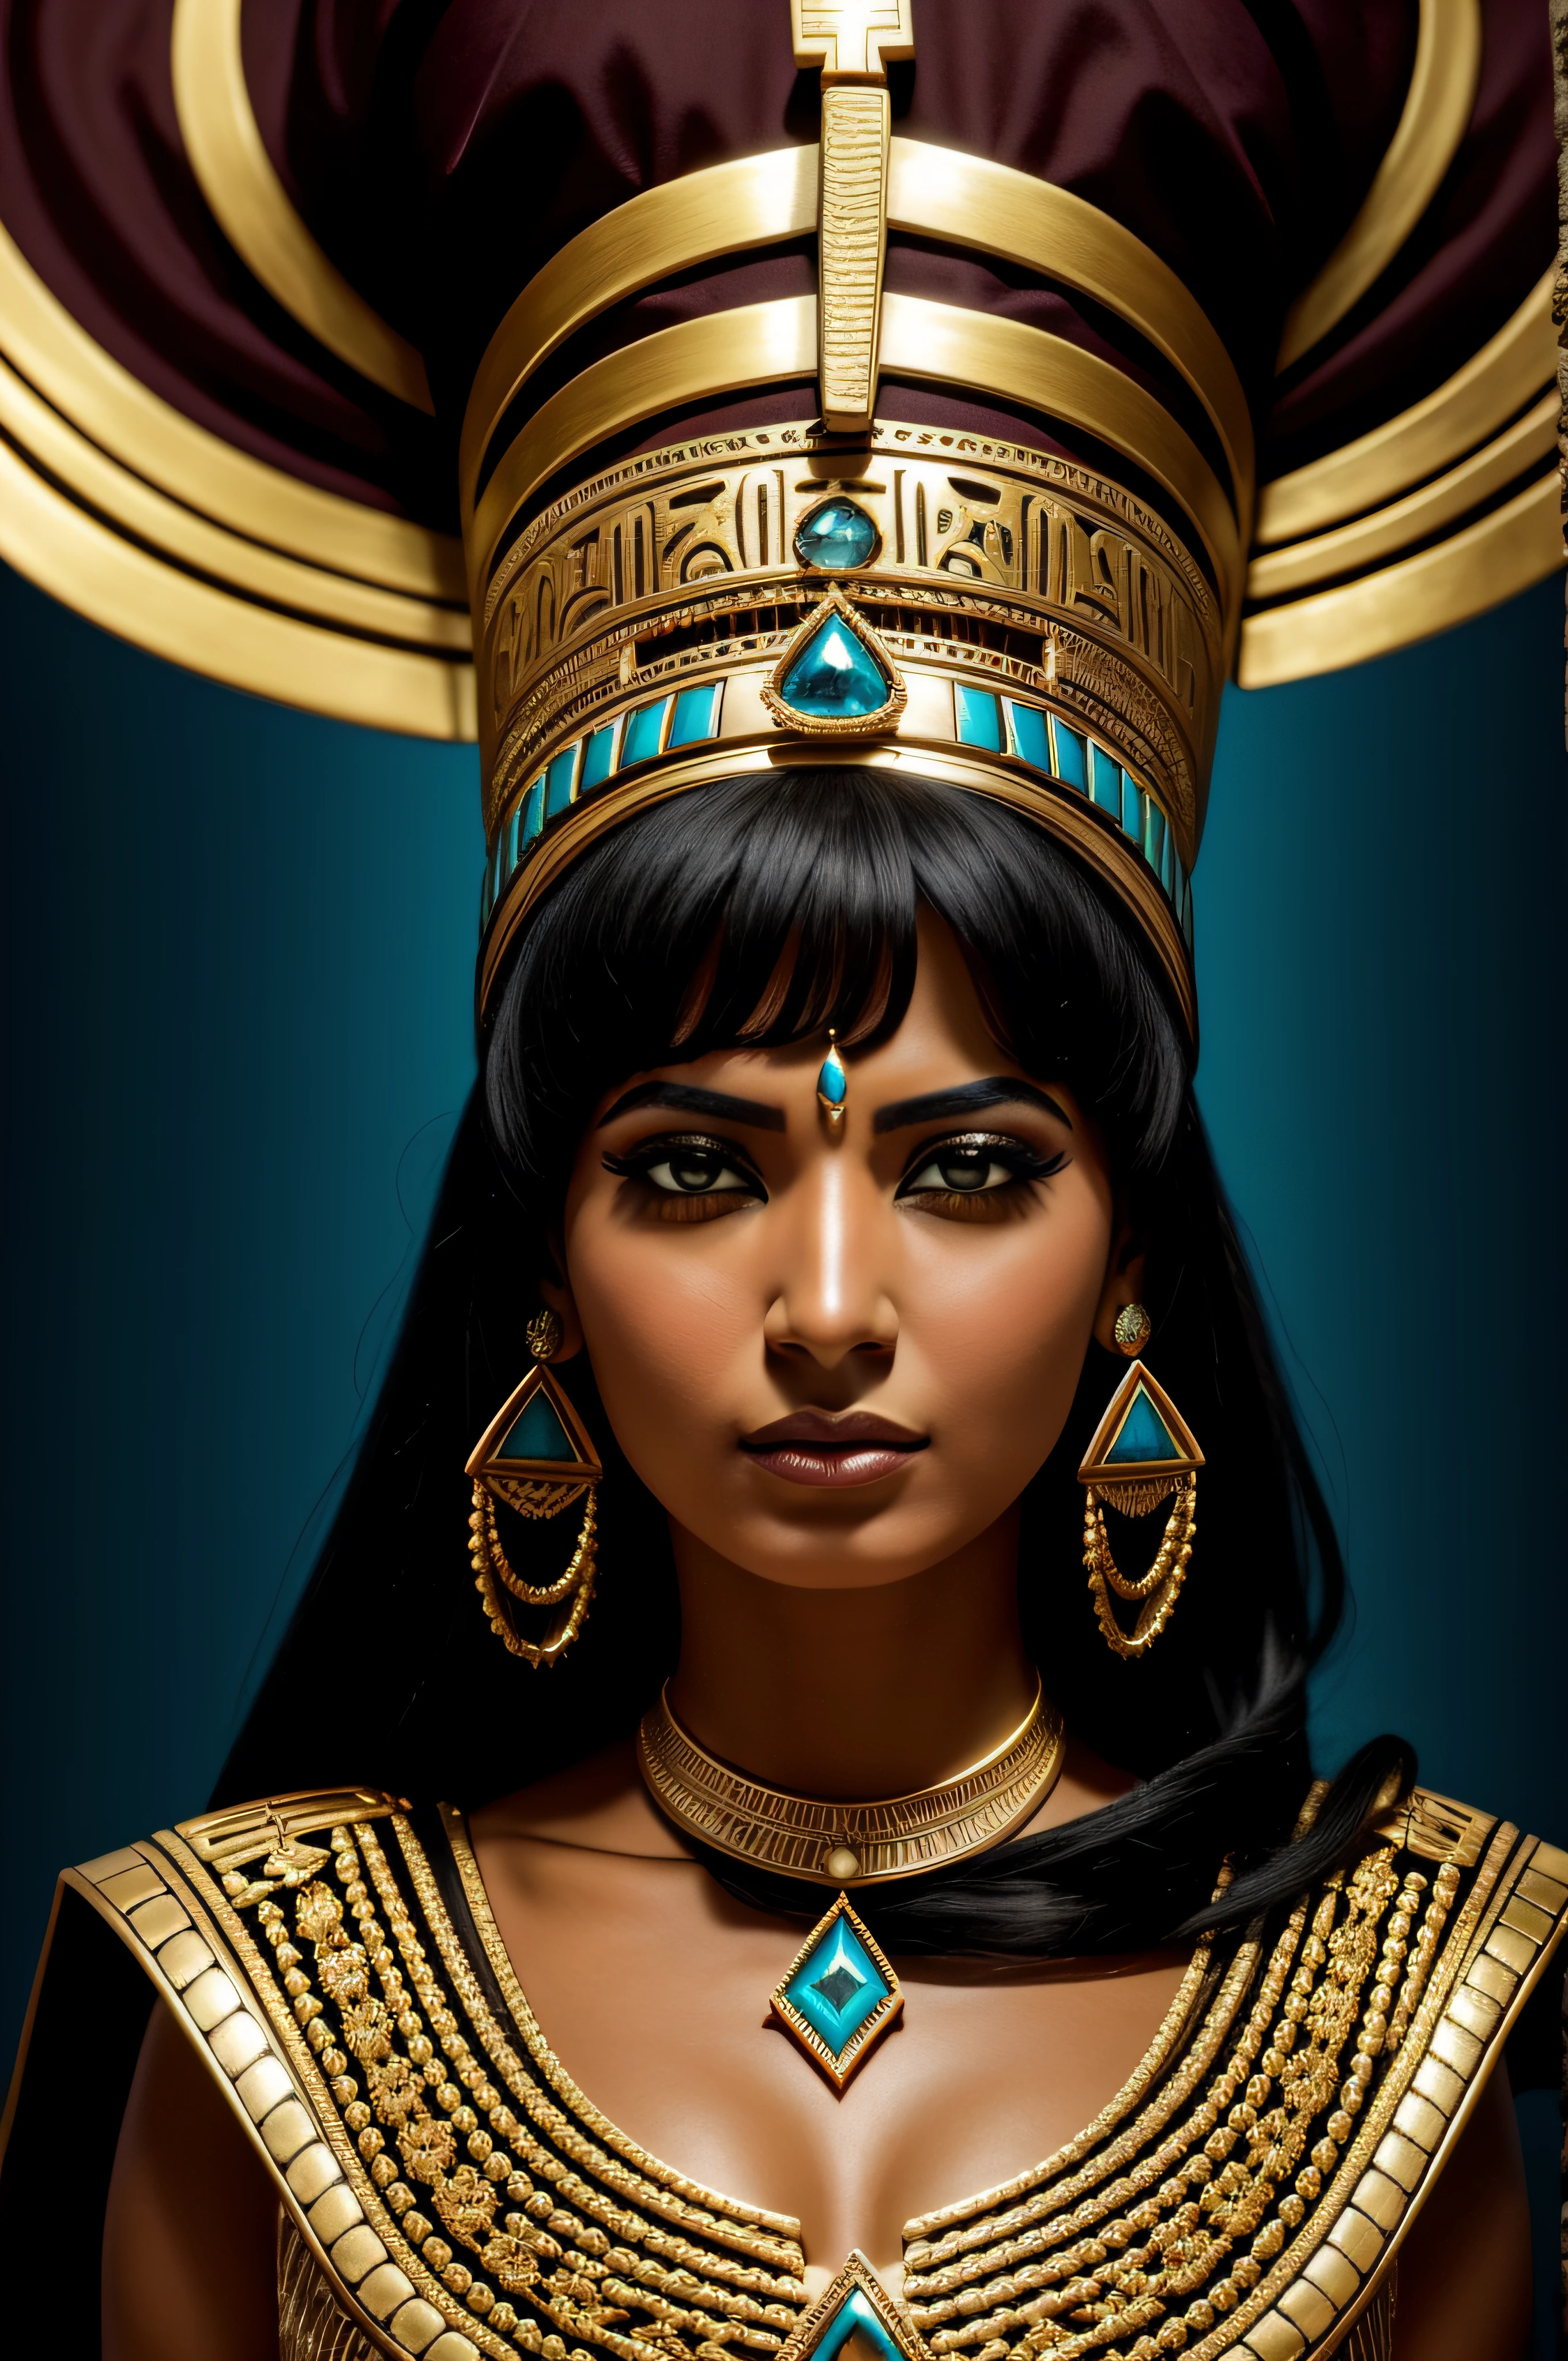 หญิงชาวอียิปต์ในชุด, โพสท่ากับเครื่องประดับ, ในรูปแบบสีทองเข้มและสีฟ้าเข้ม, ฉากแฟนตาซีที่ยิ่งใหญ่, ภาพถ่ายทางภูมิศาสตร์แห่งชาติ, ราชวงศ์เหนือและใต้, จ้องมองที่รุนแรง, ริมไลท์, รายละเอียดหรูหรา